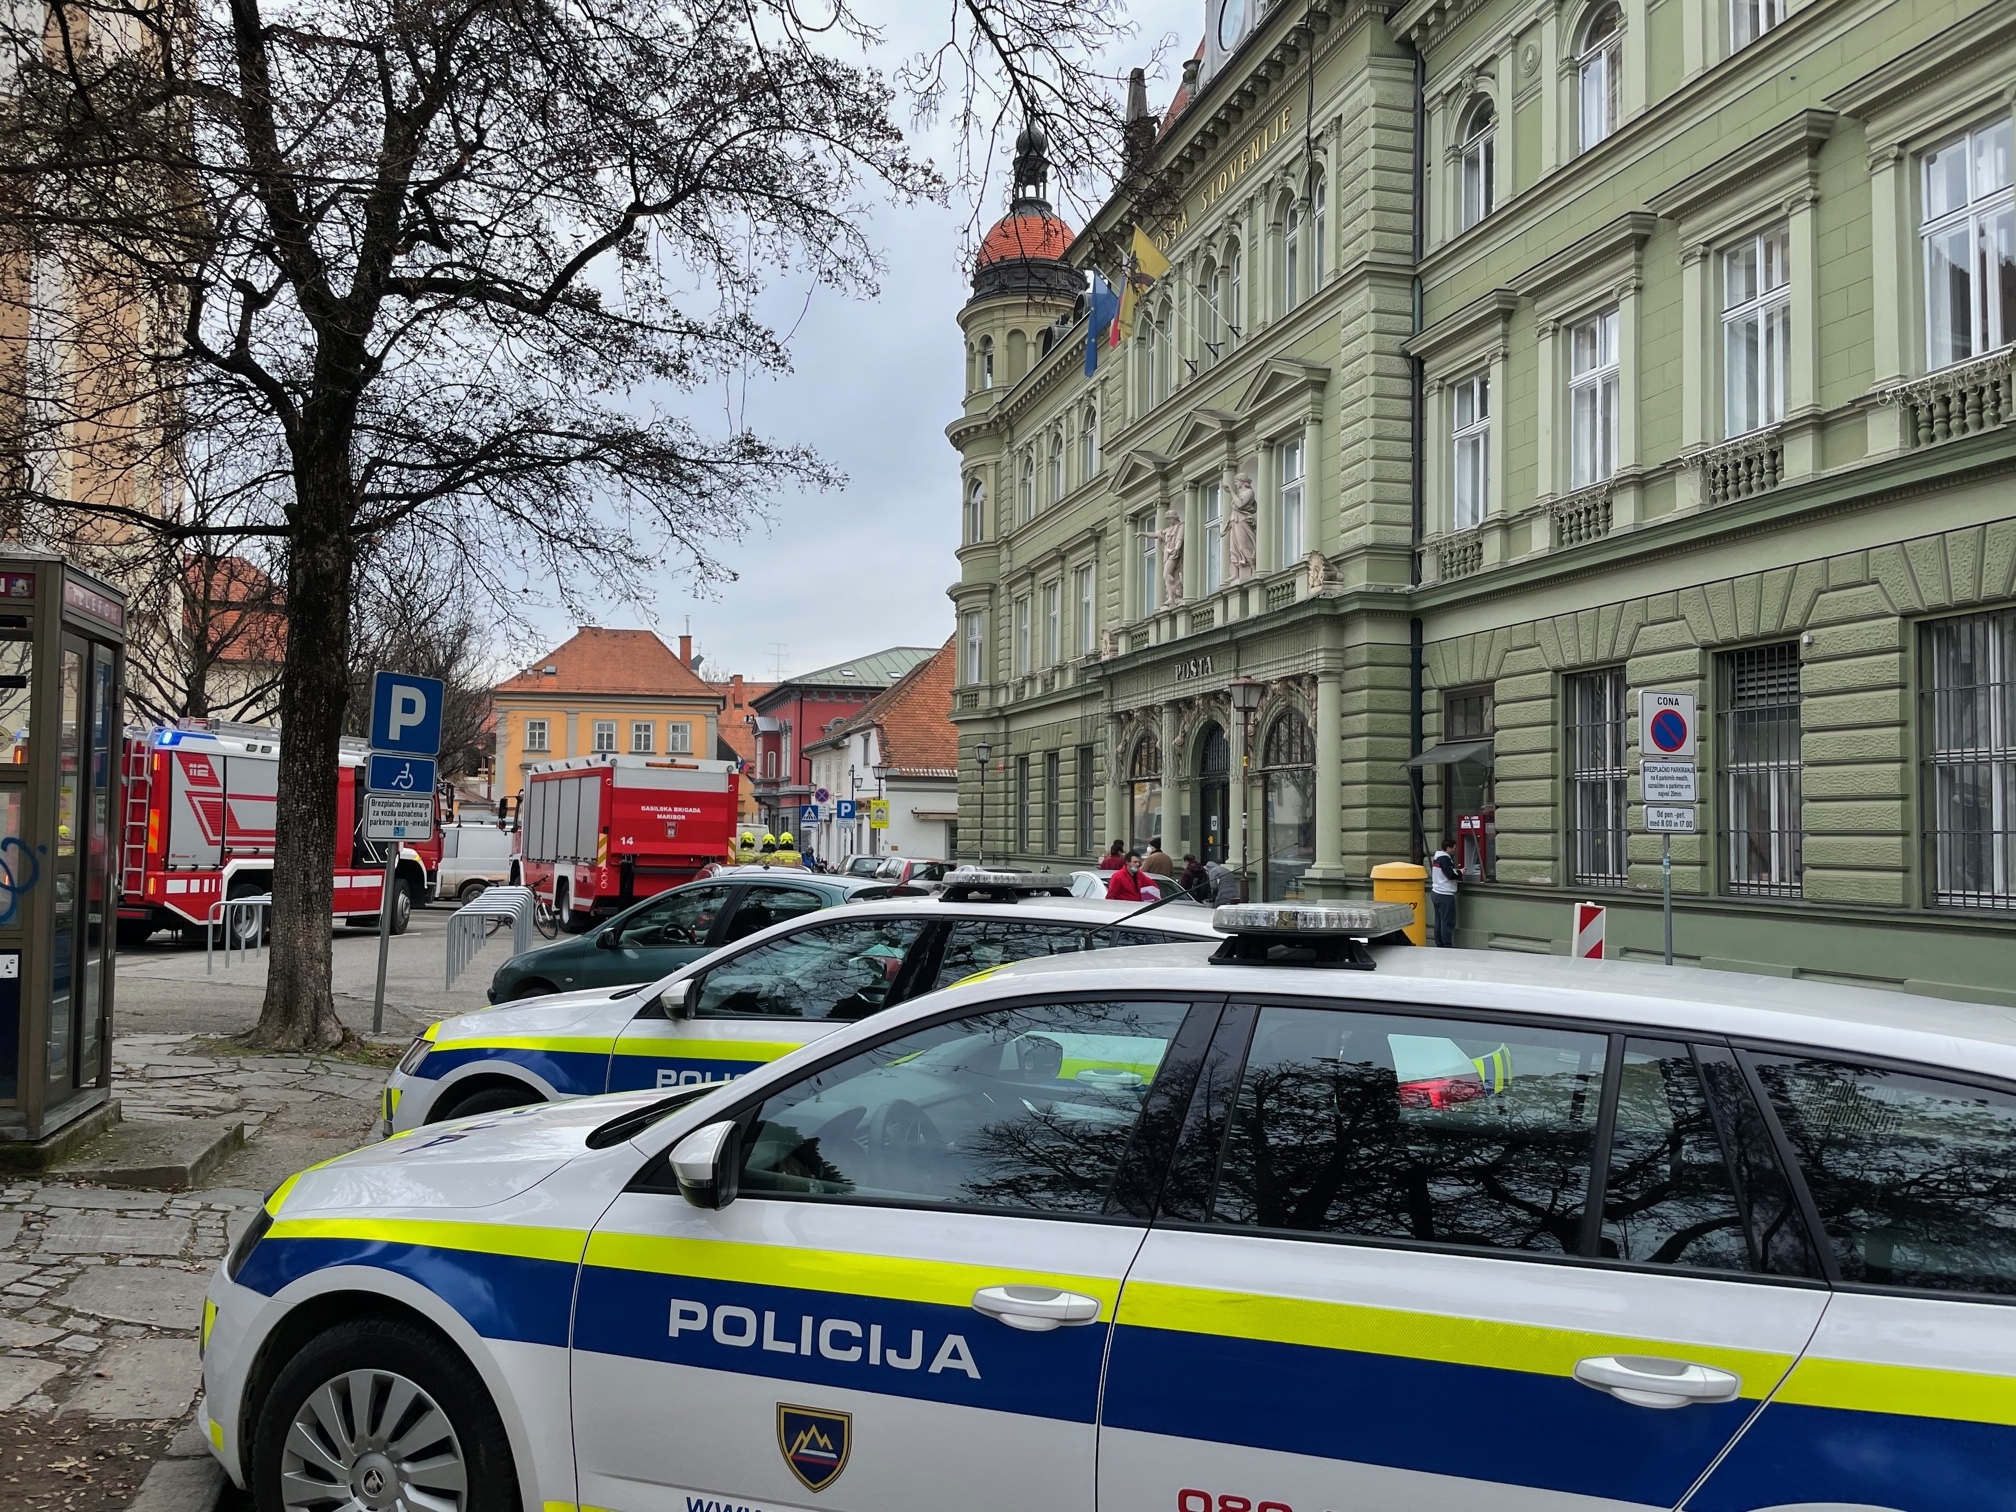 Ste videli nesrečo, ki se je zgodila v centru Maribora?